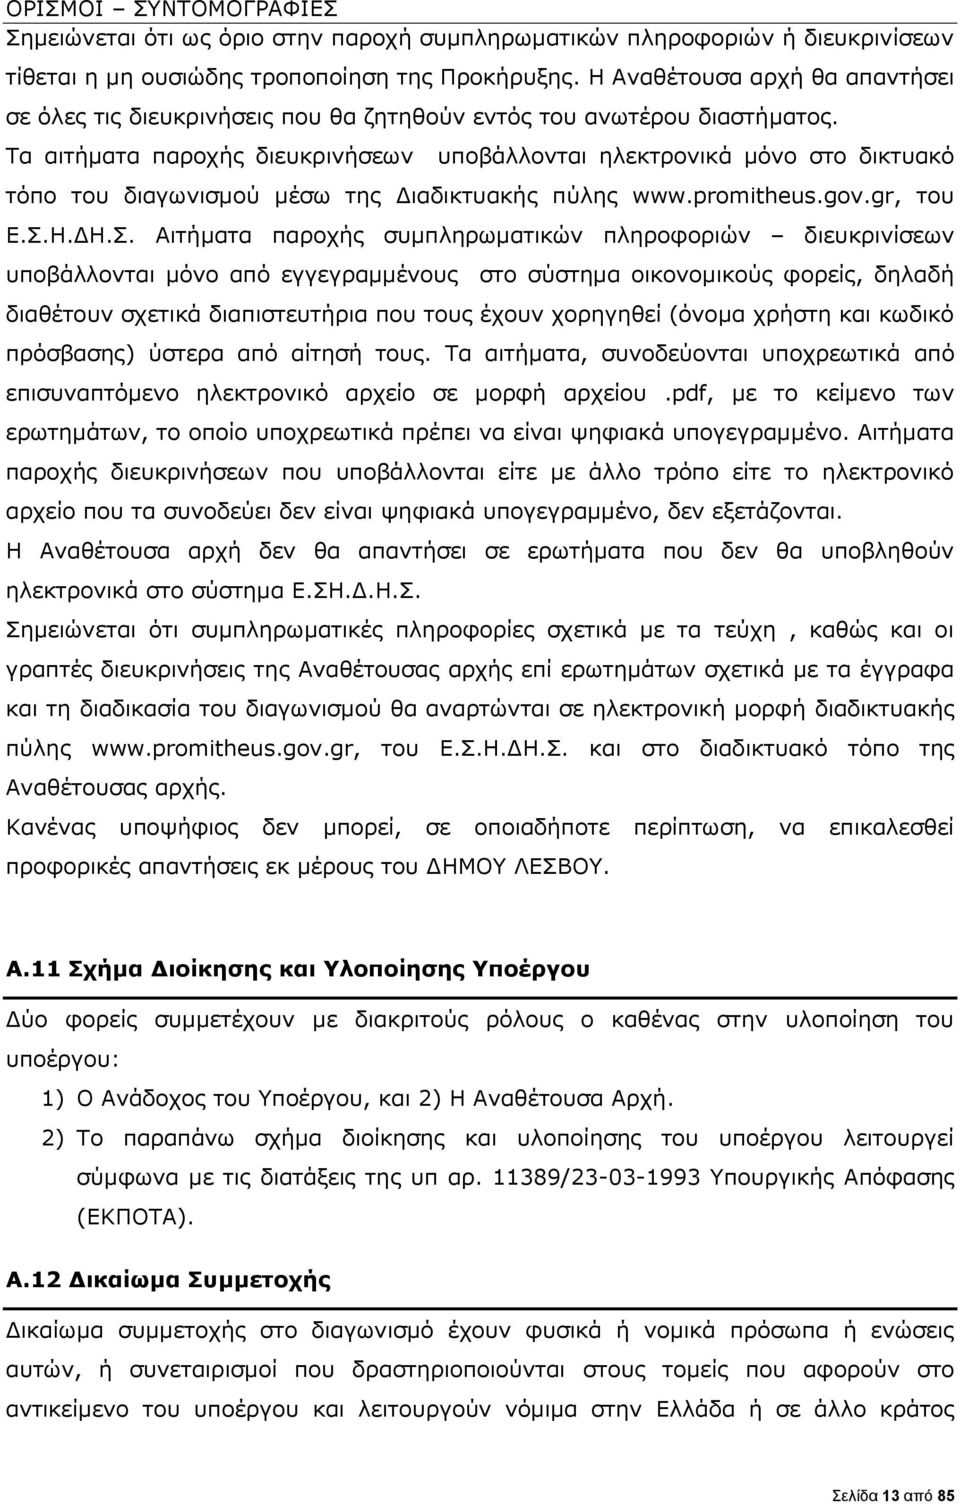 Τα αιτήματα παροχής διευκρινήσεων υποβάλλονται ηλεκτρονικά μόνο στο δικτυακό τόπο του διαγωνισμού μέσω της Διαδικτυακής πύλης www.promitheus.gov.gr, του Ε.Σ.